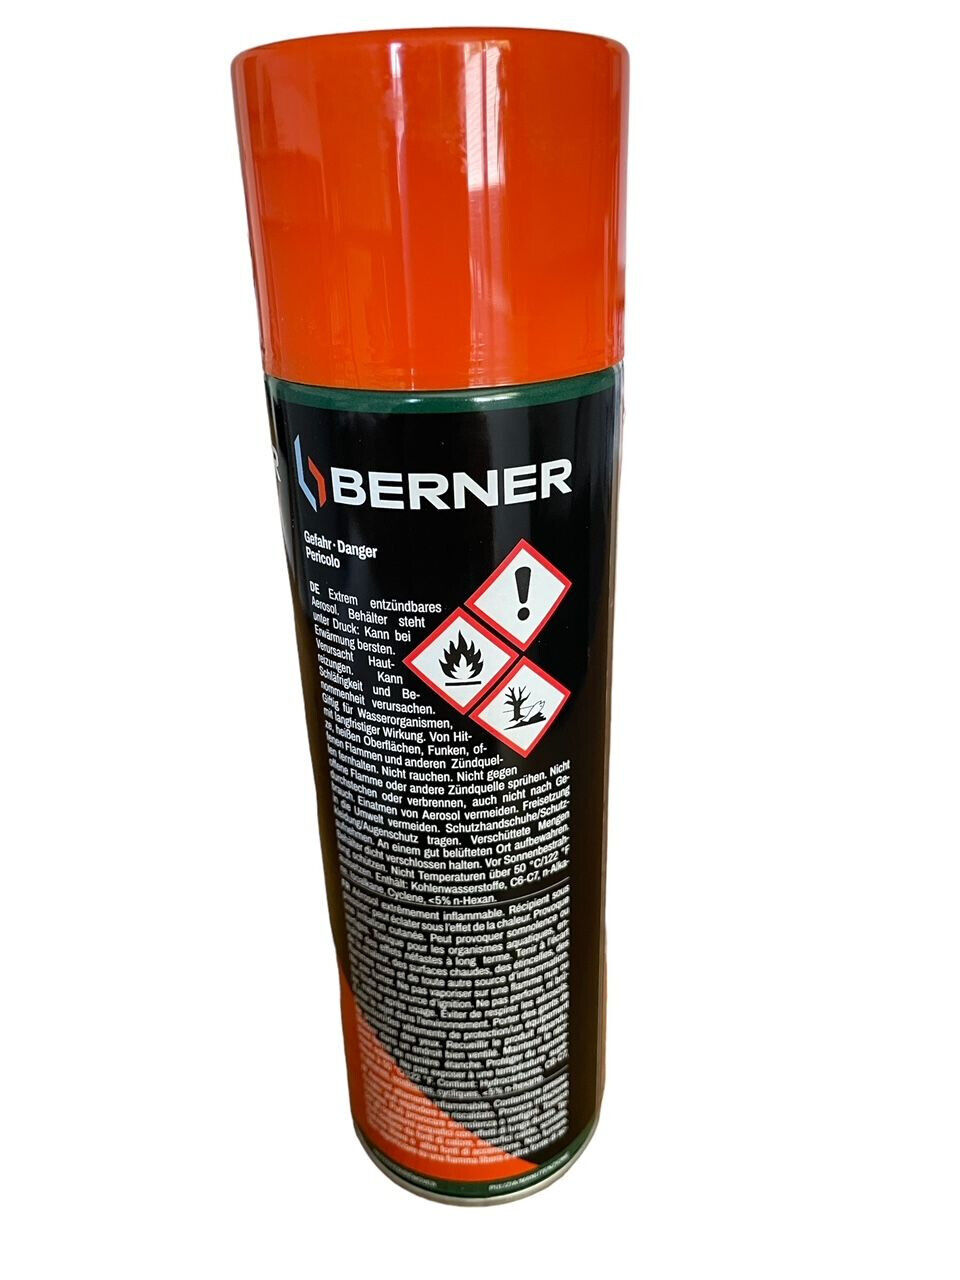 6x Dosen Berner Bremsenreiniger 500ml Teile Reiniger Brake Cleaner Spray-Dose